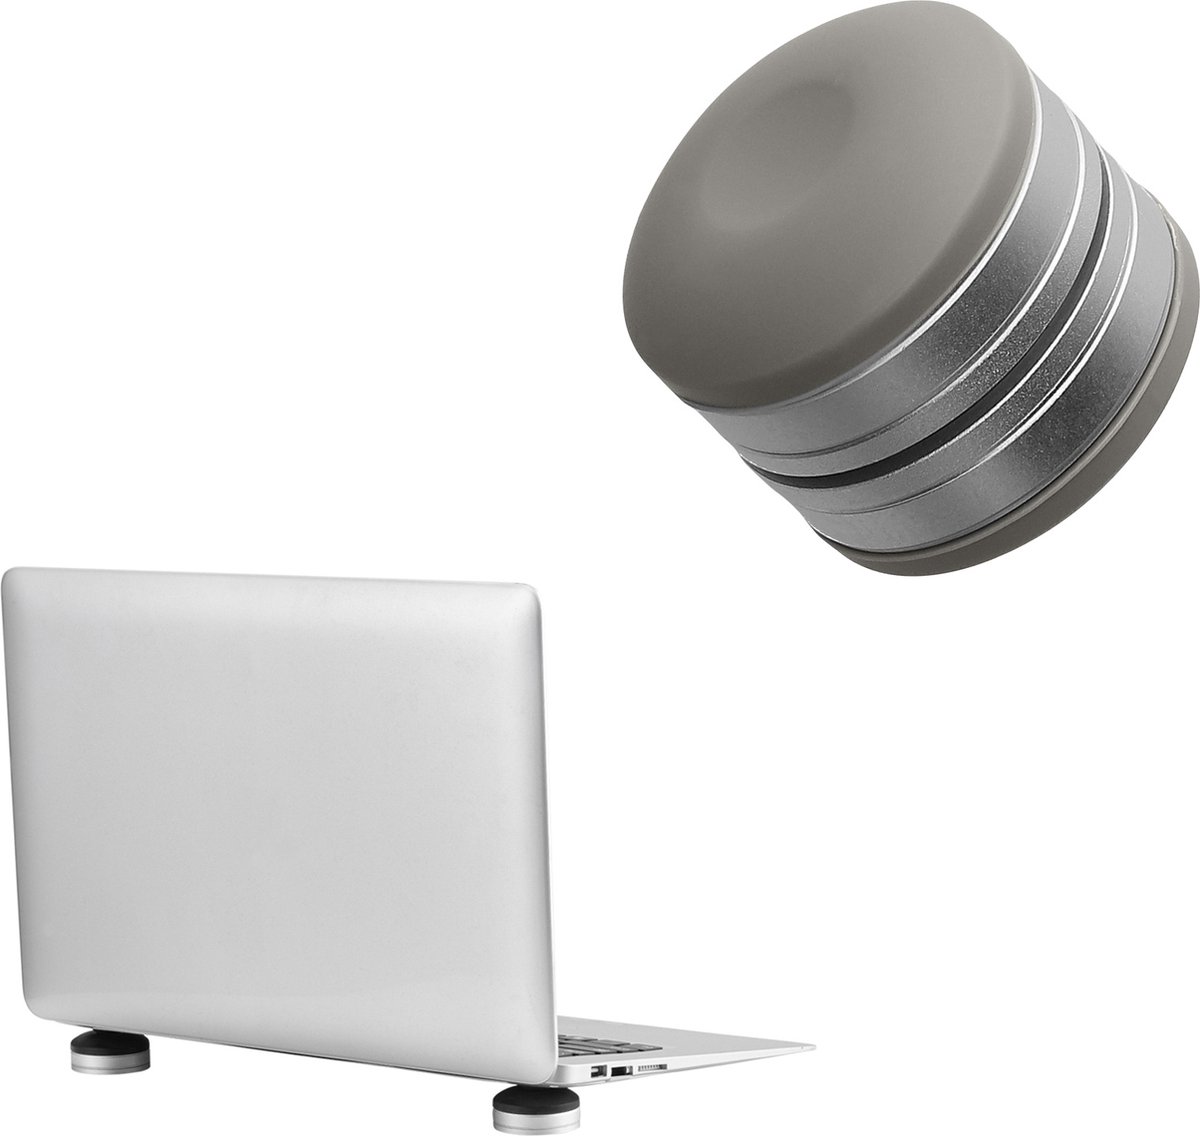 kwmobile siliconen voetjes voor laptop - Hoogte verstelbaar 19-25 mm - Mini laptop standaard - 4 cm diameter - In grijs / zilver